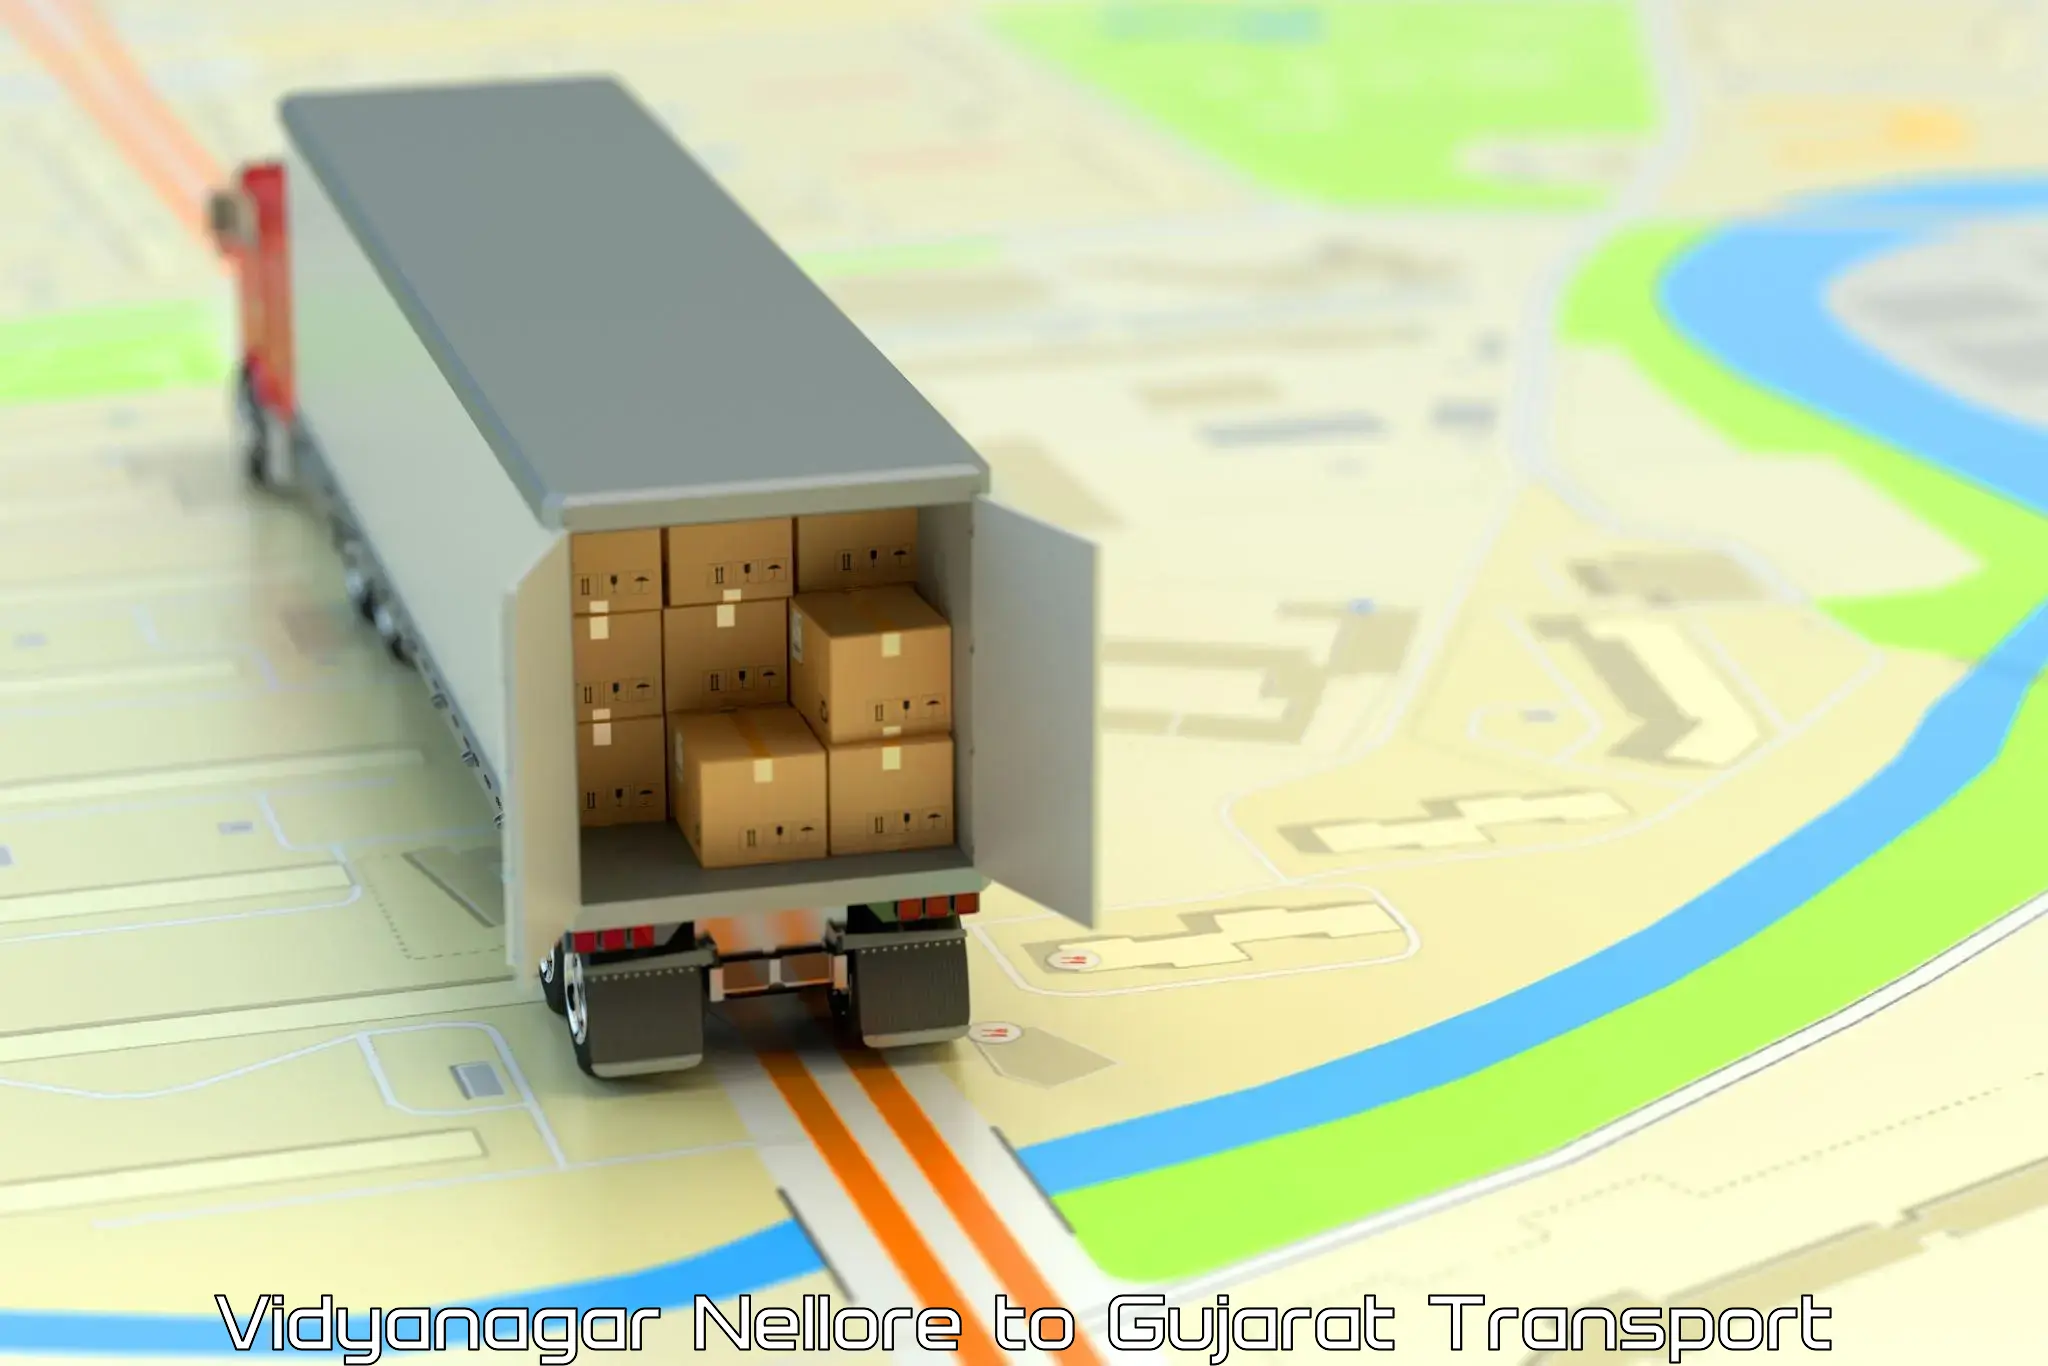 Part load transport service in India Vidyanagar Nellore to IIT Gandhi Nagar